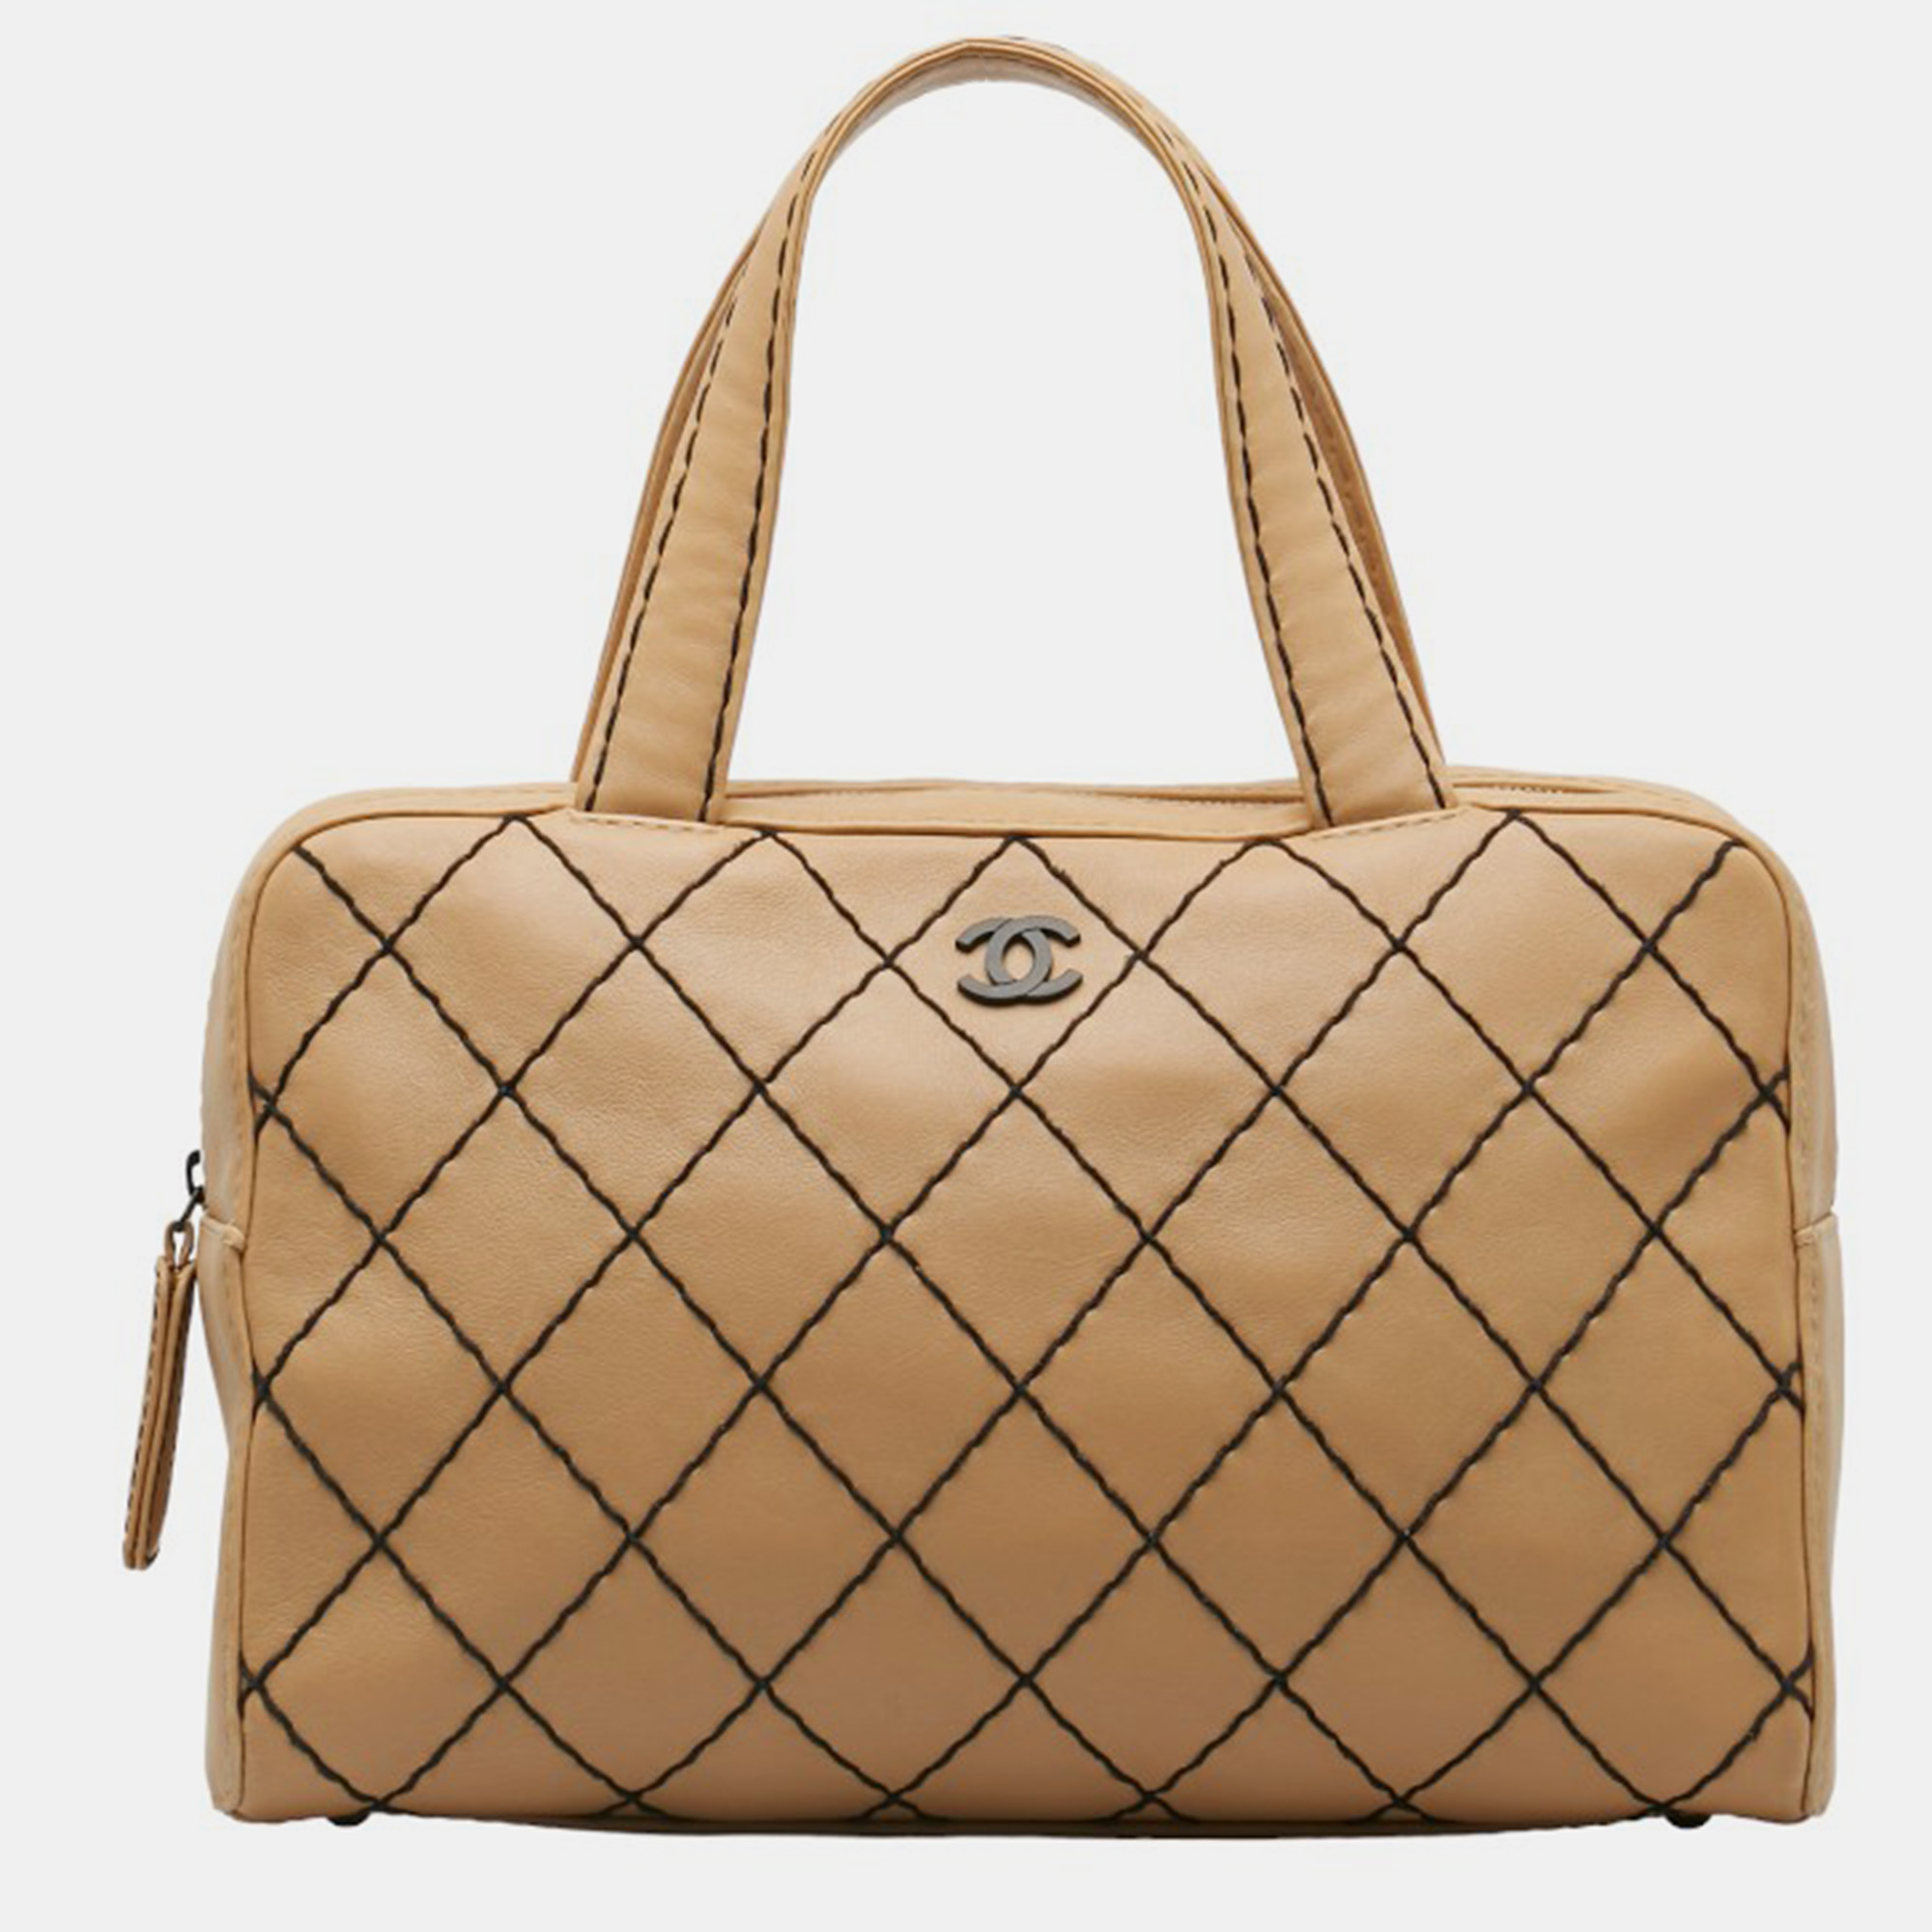 Chanel brown leather wild stitch handbag